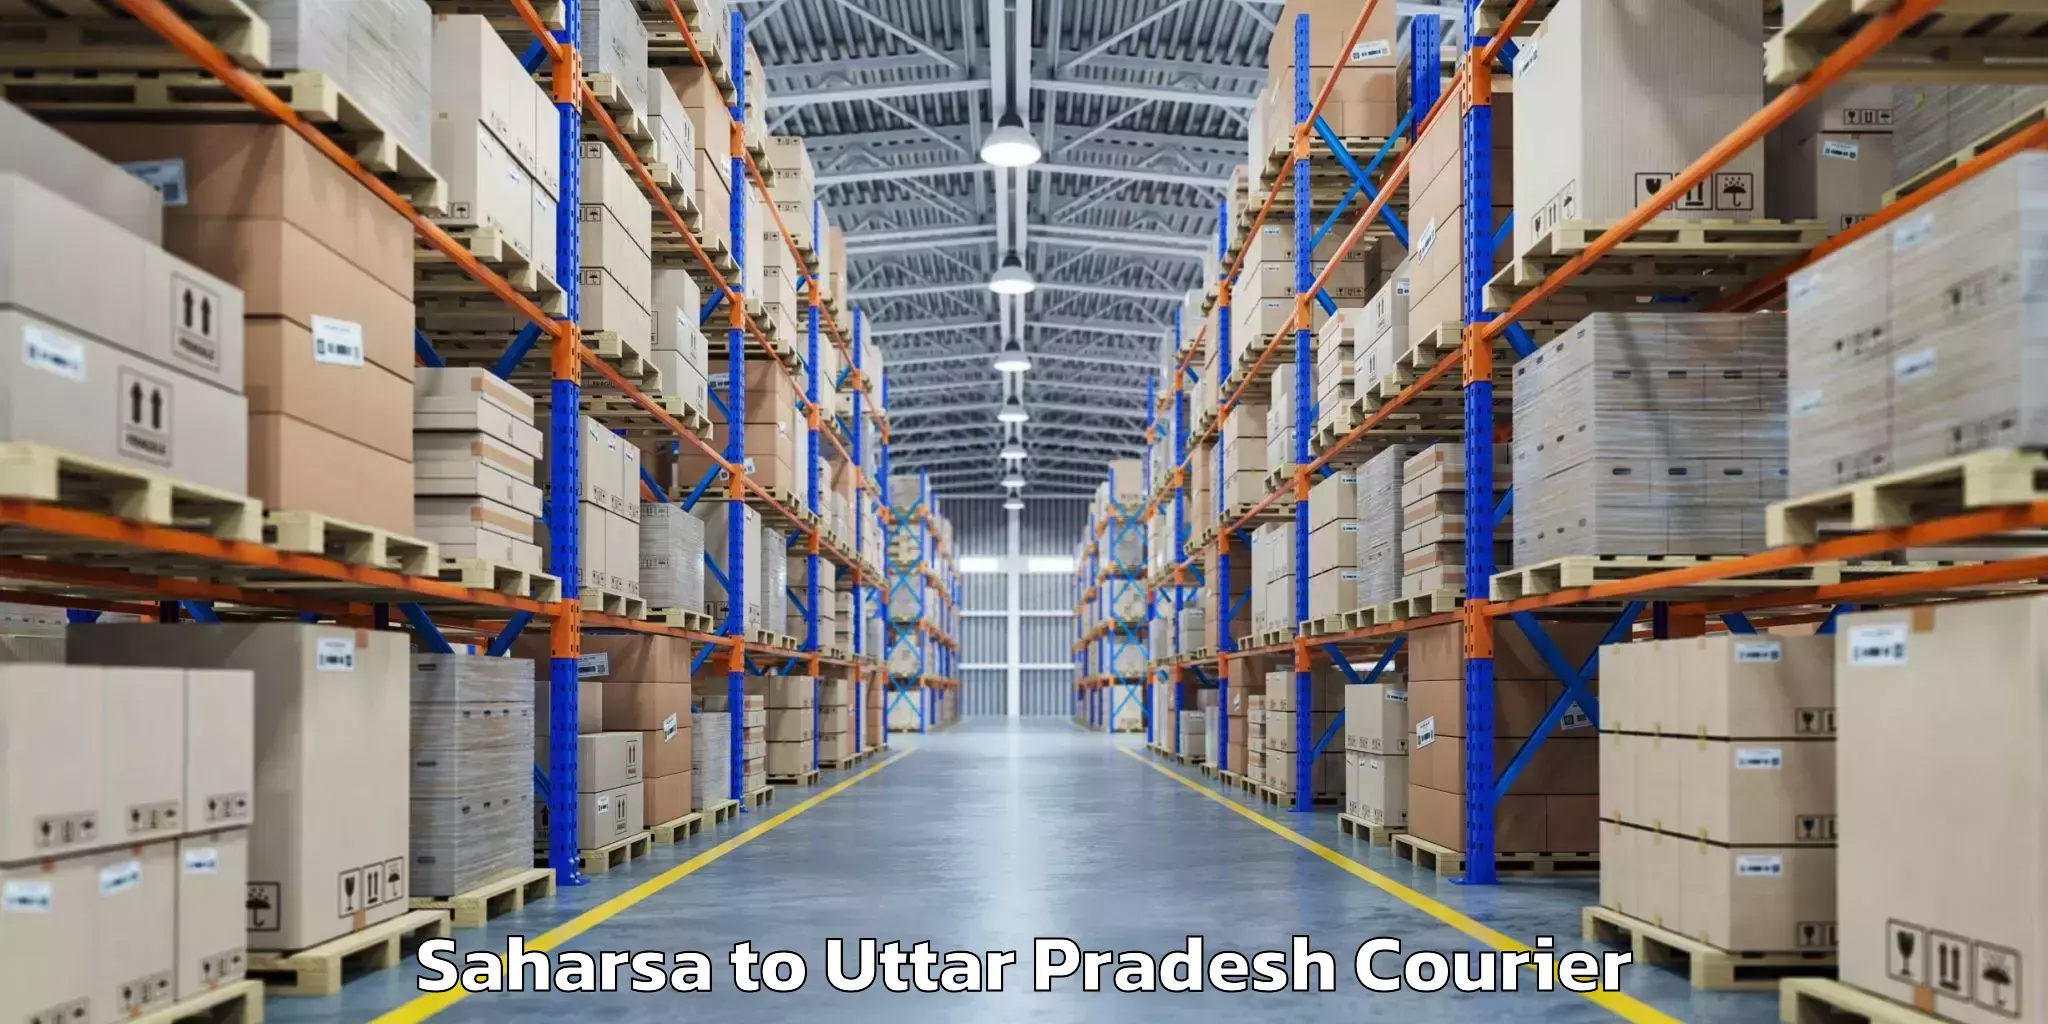 Luggage shipping rates Saharsa to Sikandra Rao